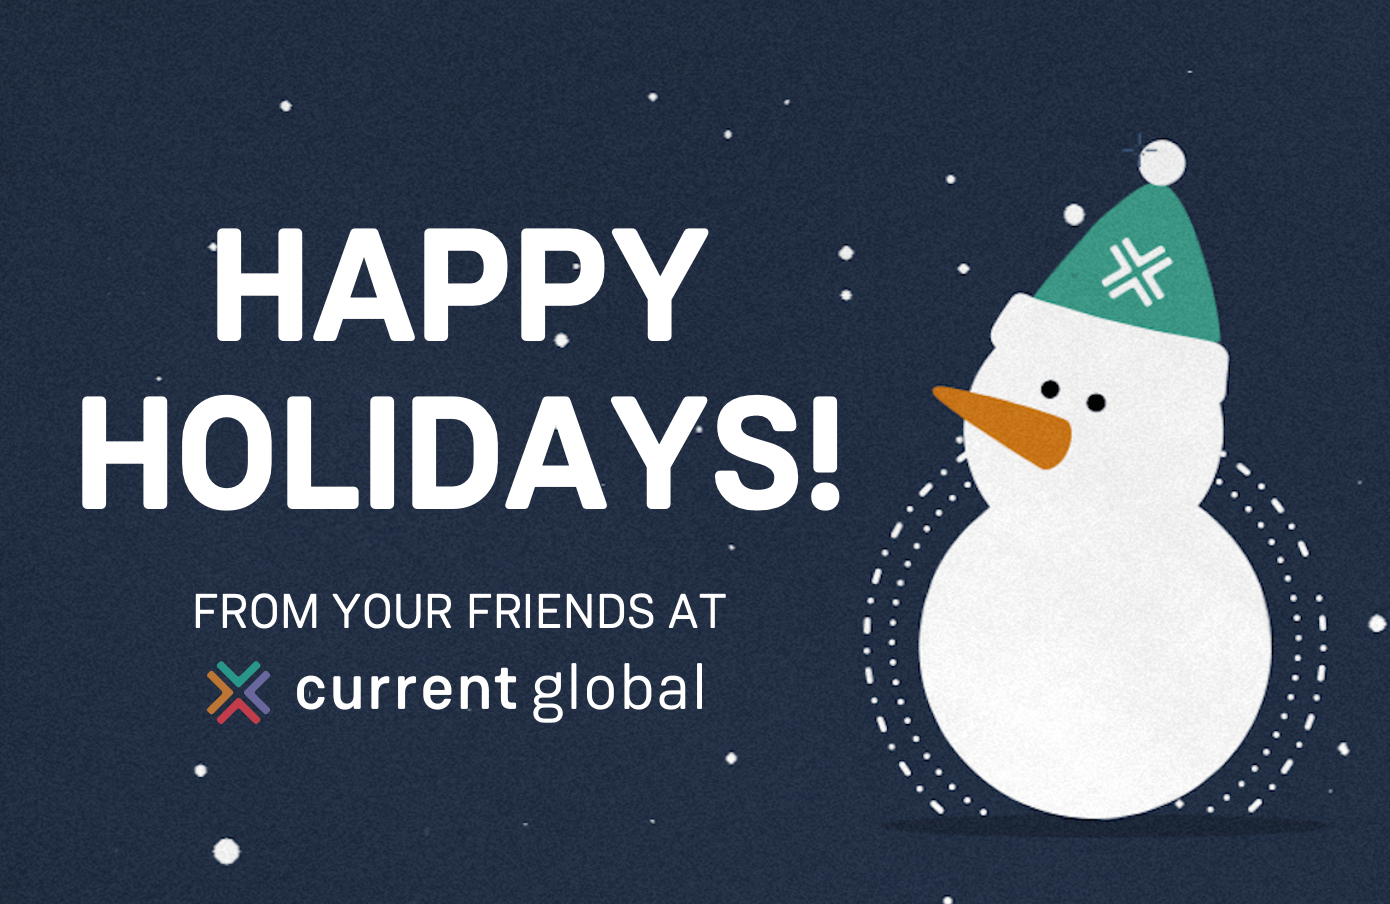 Bonhomme de neige de style dessin animé sur un fond sombre avec des flocons de neige, avec un message d'accueil disant "Joyeuses fêtes" de la part de vos amis à l'adresse suivante Current Global.